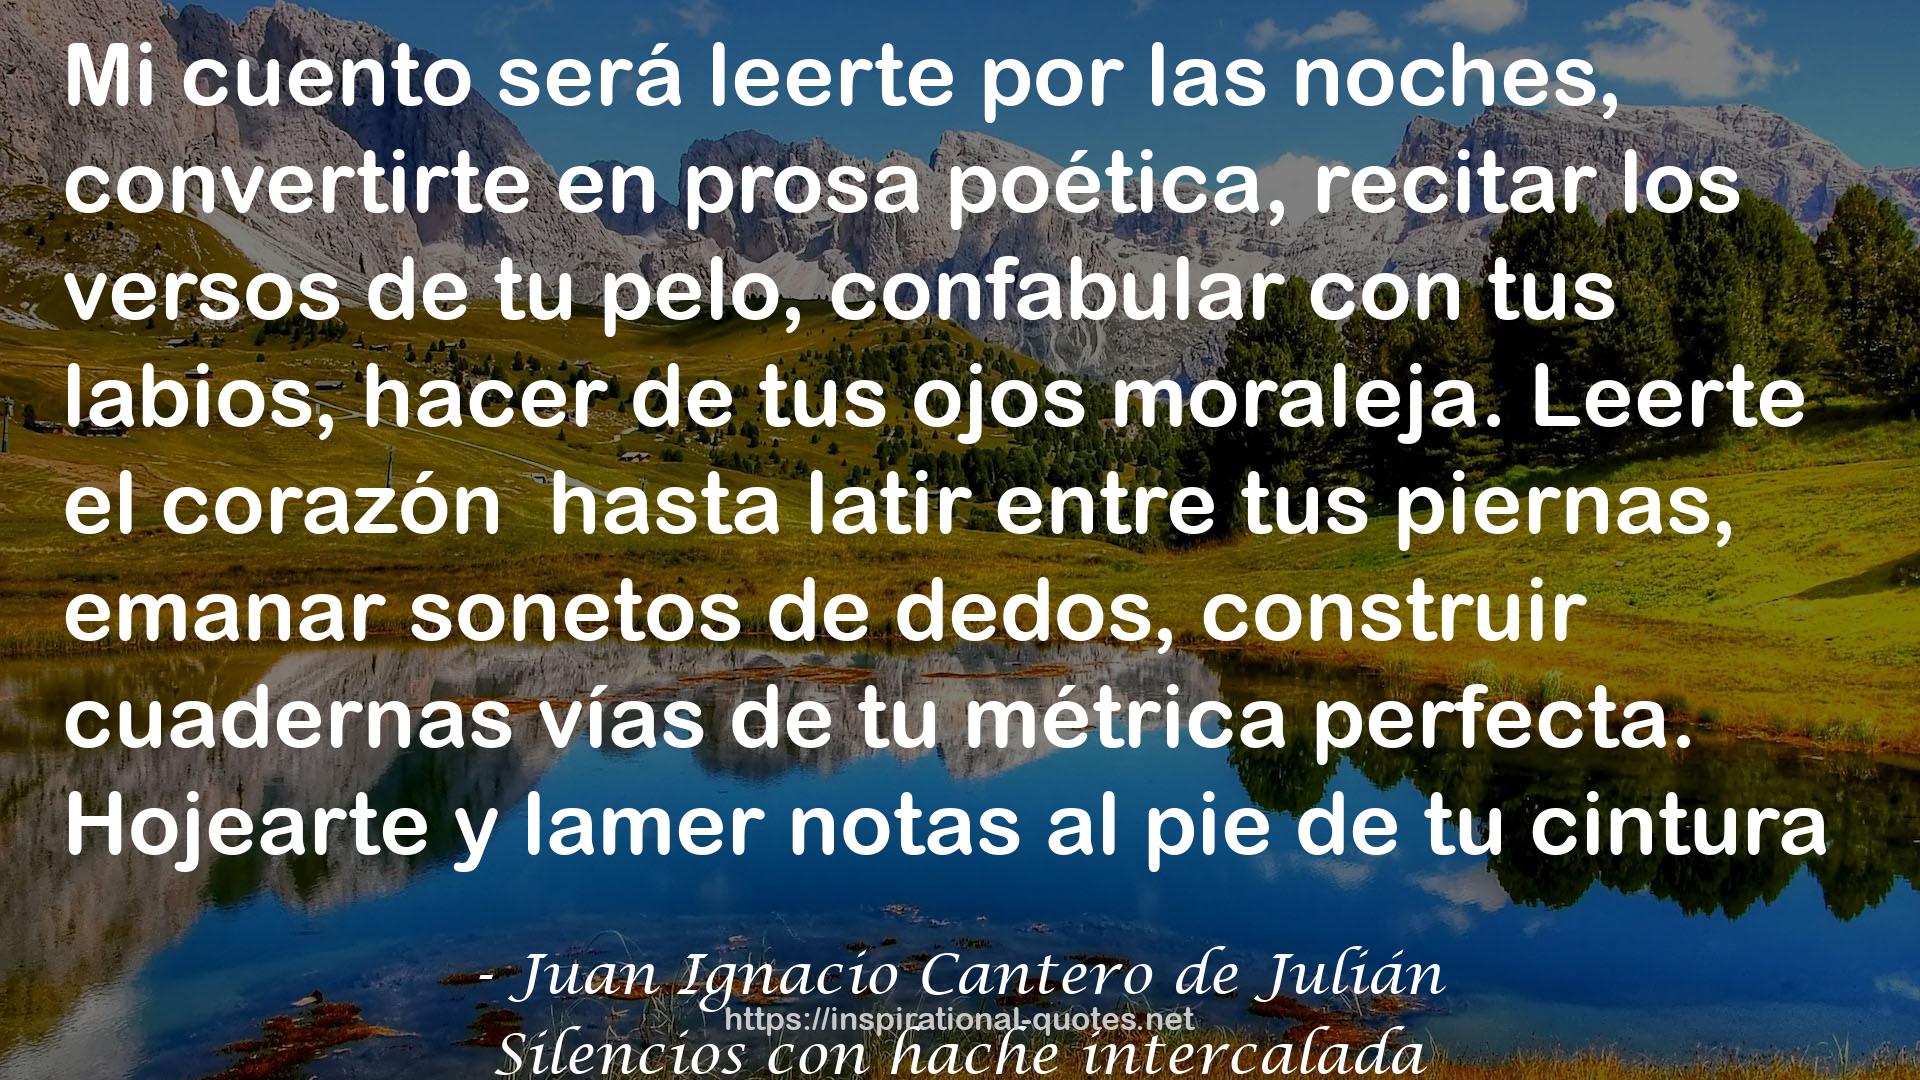 Juan Ignacio Cantero de Julián QUOTES